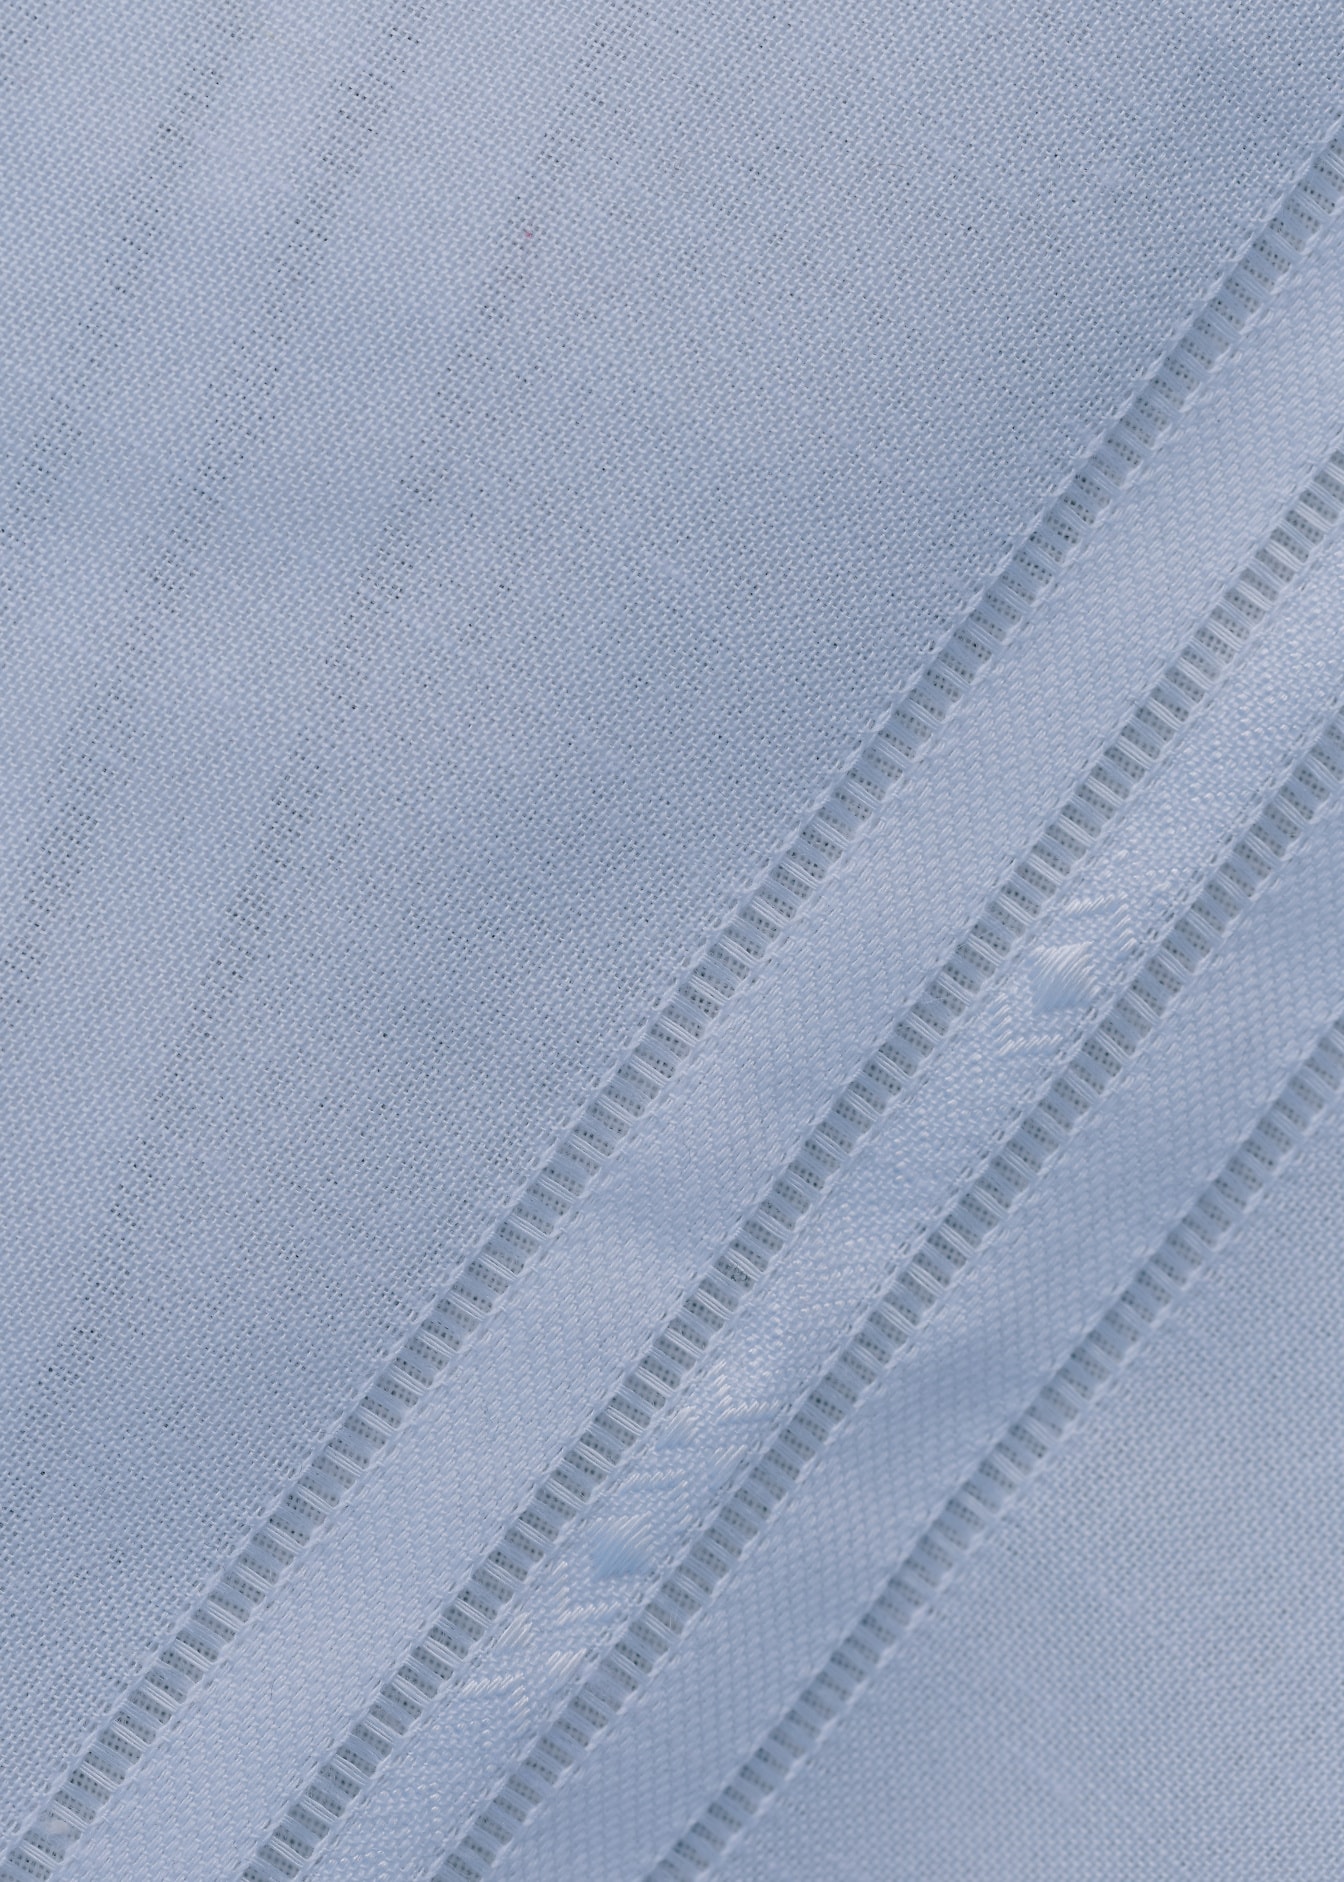 Kết cấu cận cảnh của một loại vải cotton trắng với các đường chéo